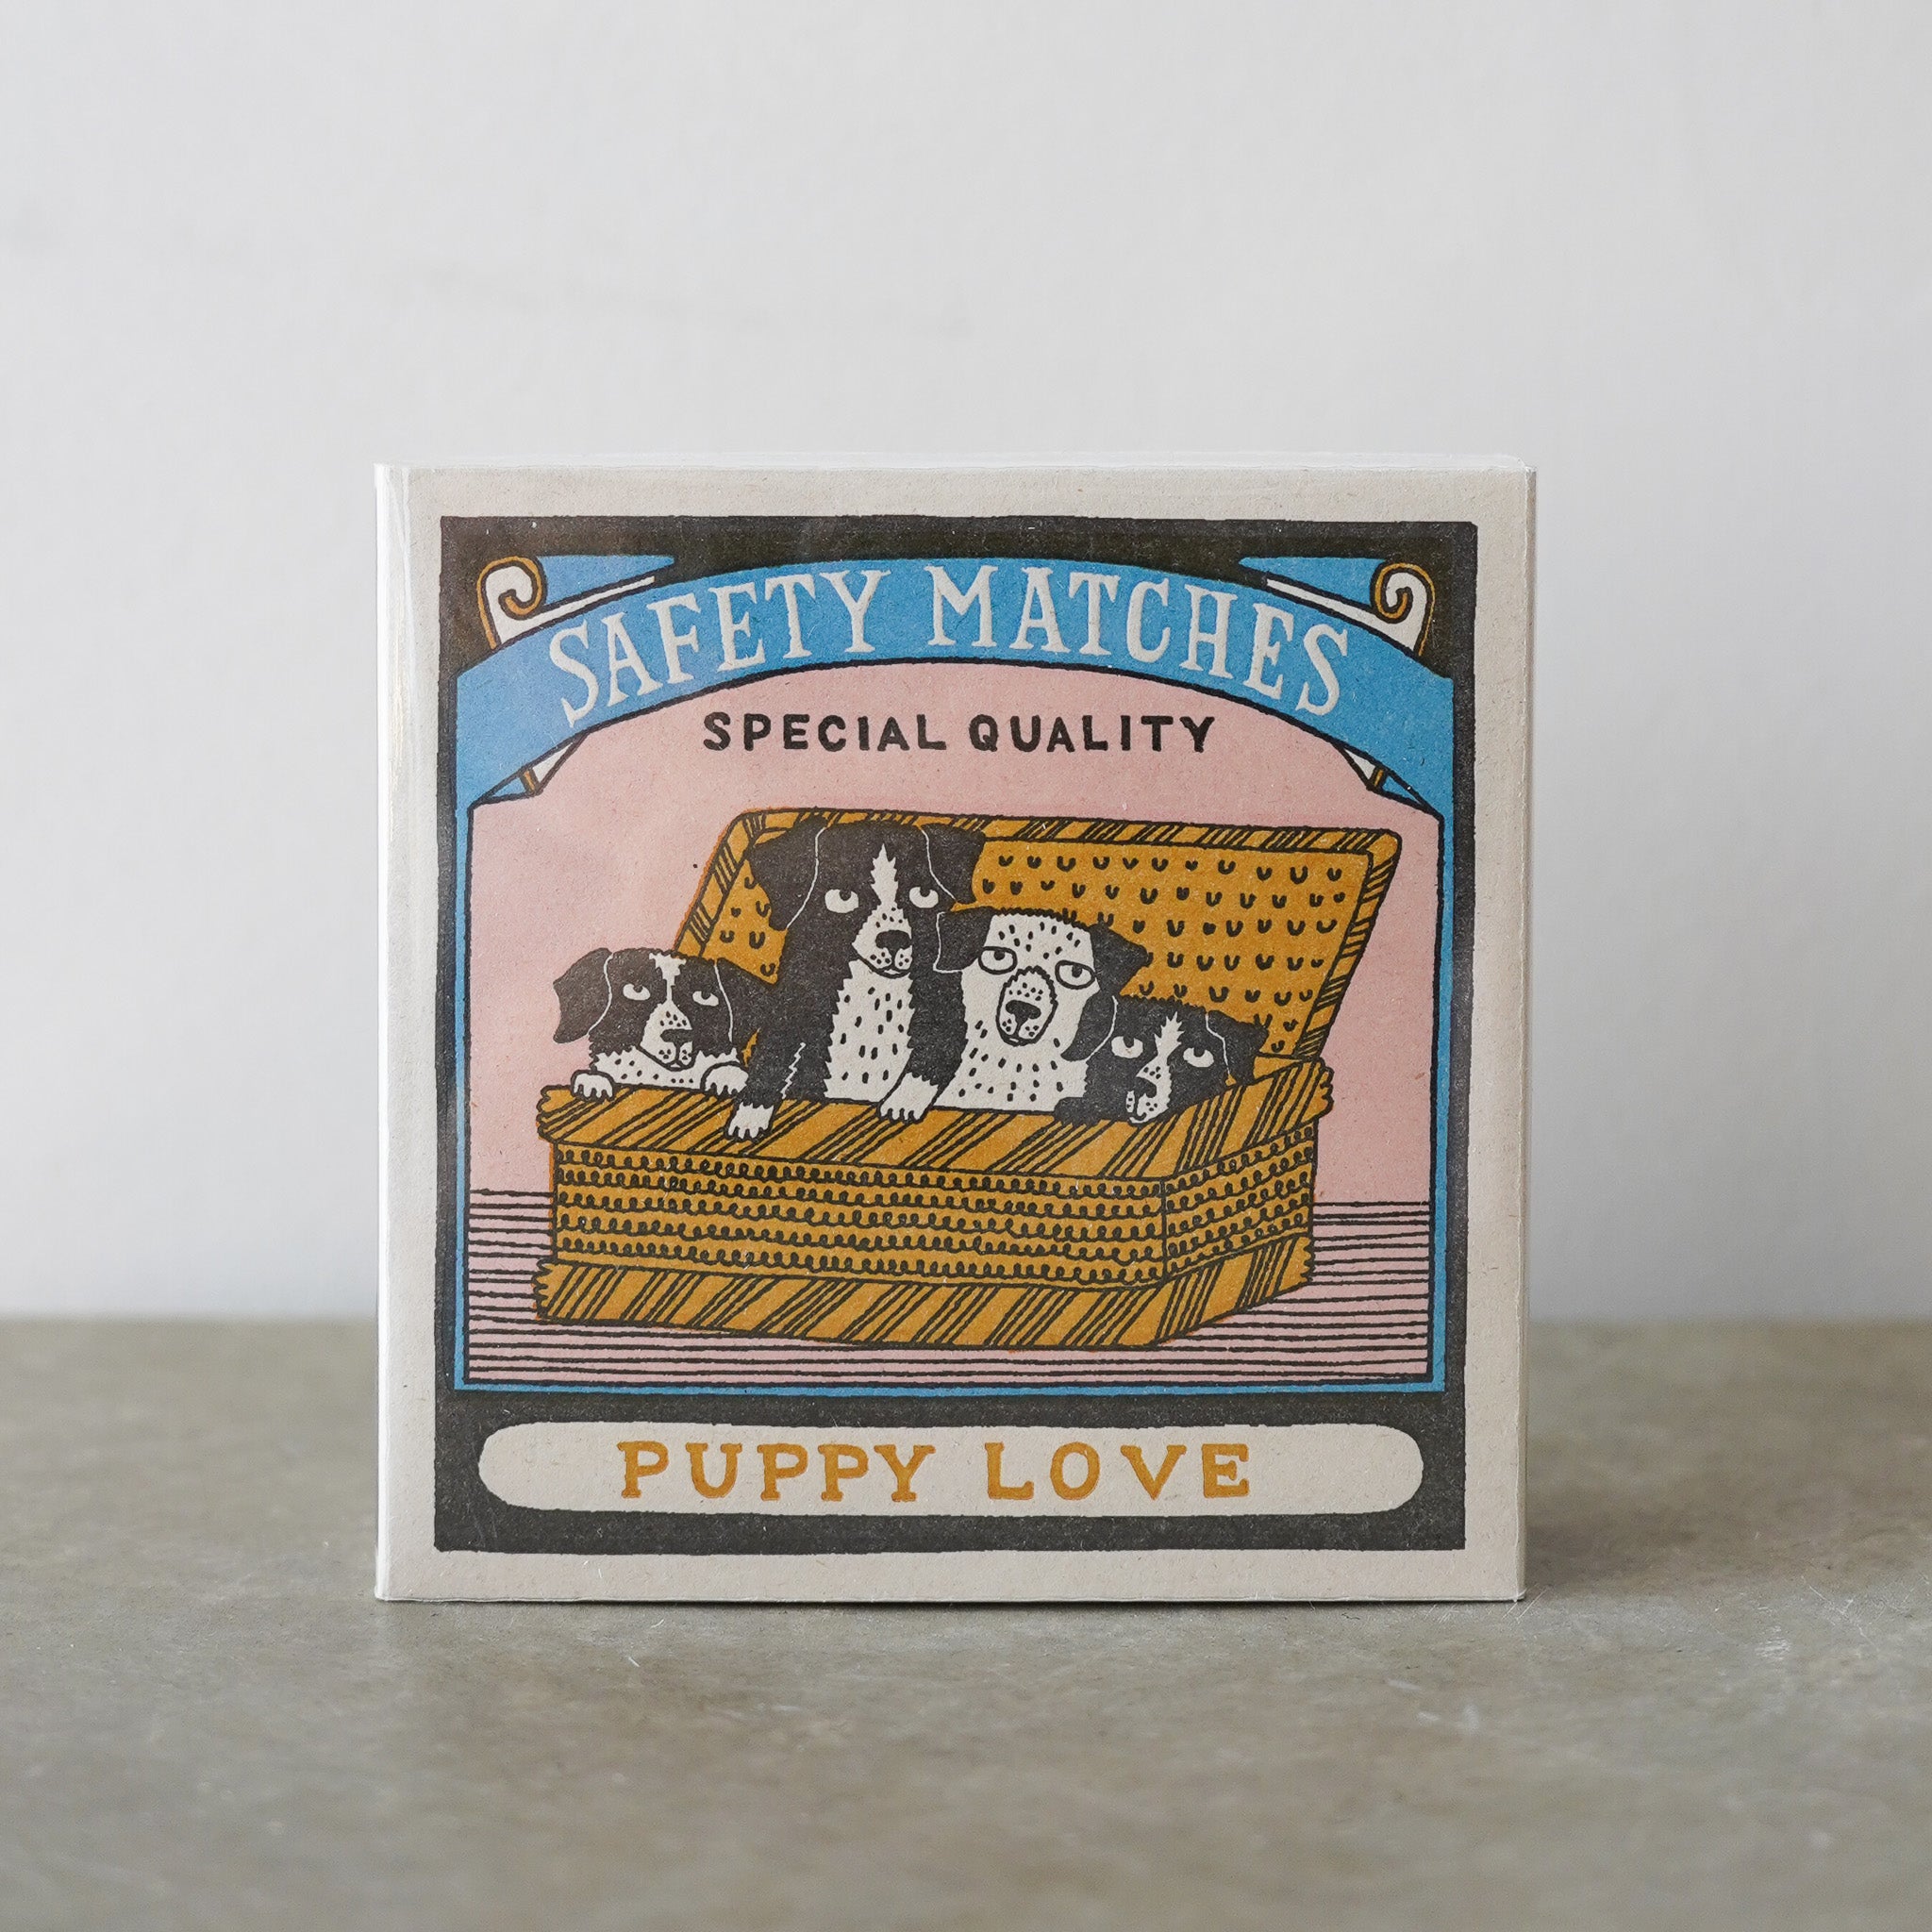 Puppy Love Matches